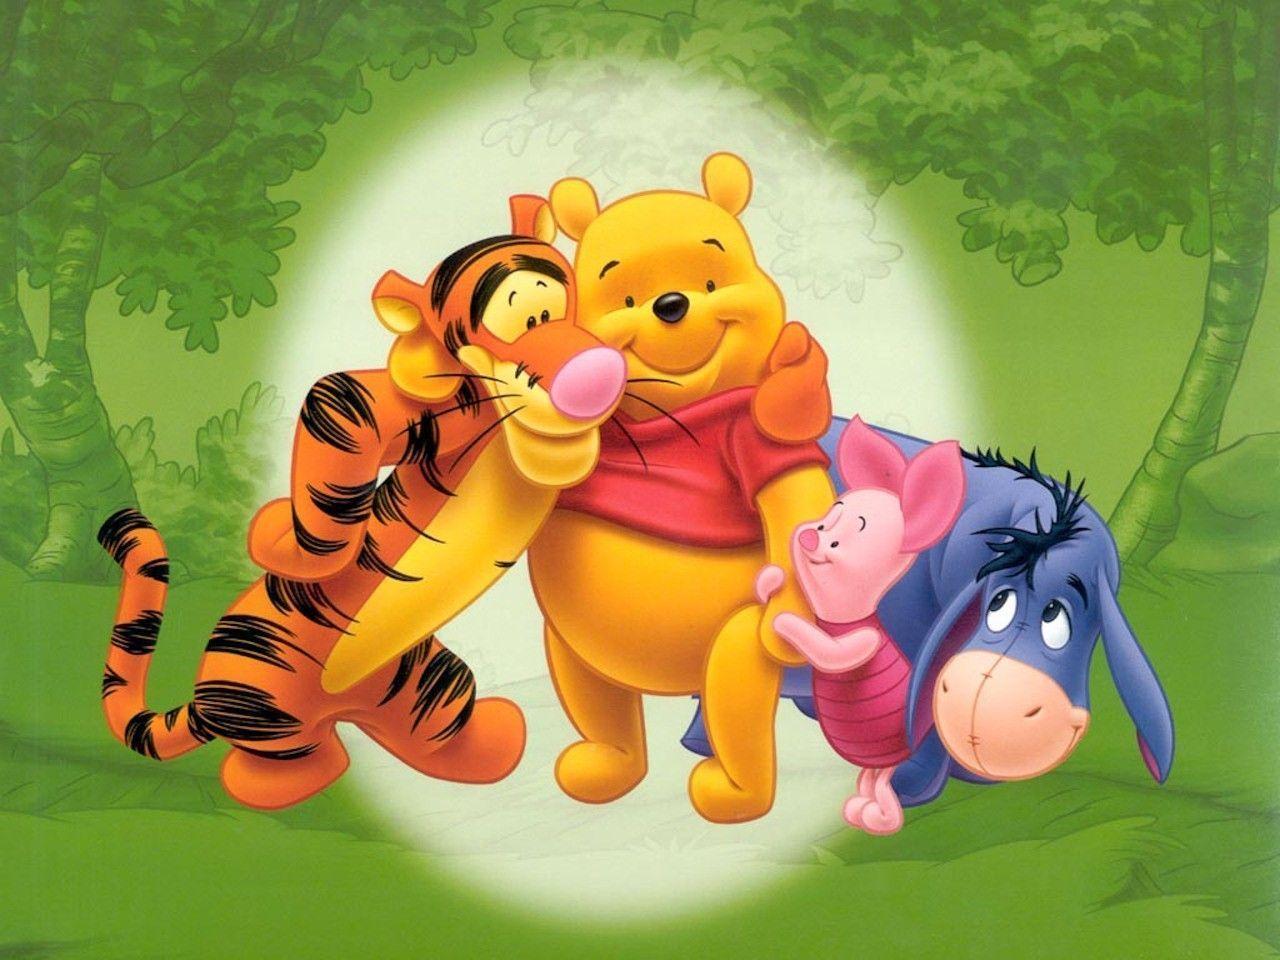 Winnie the Pooh Wallpaper Number 2 (1280 x 960 Pixels)